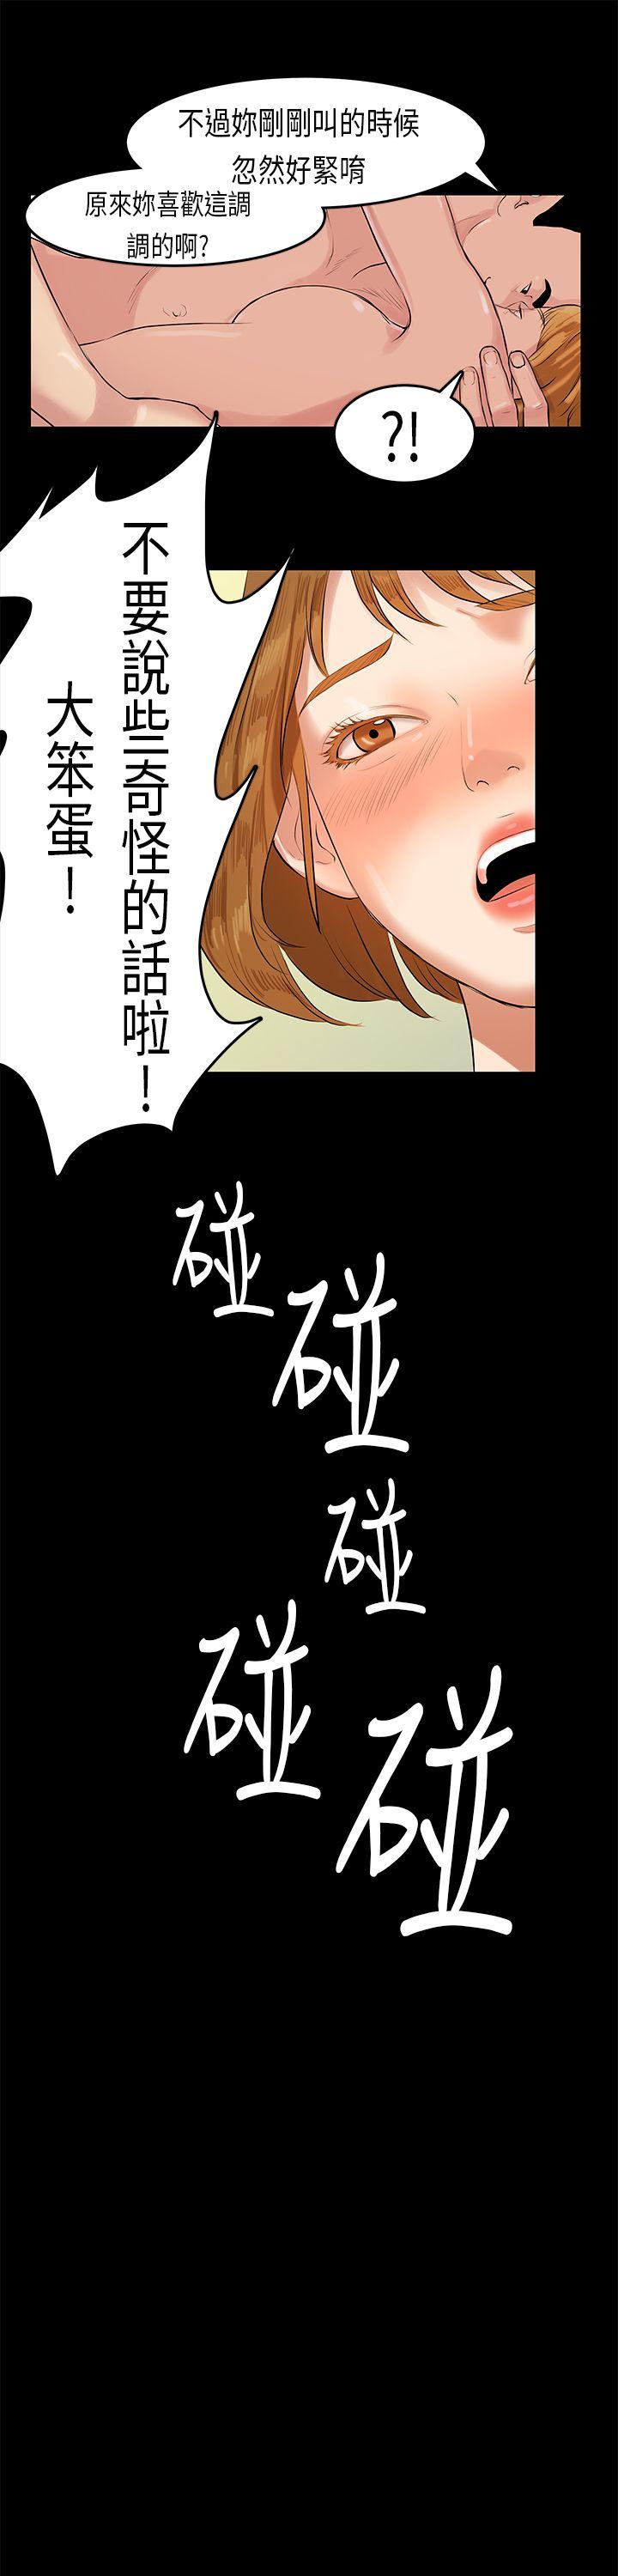 初恋症候群  第11话 漫画图片6.jpg